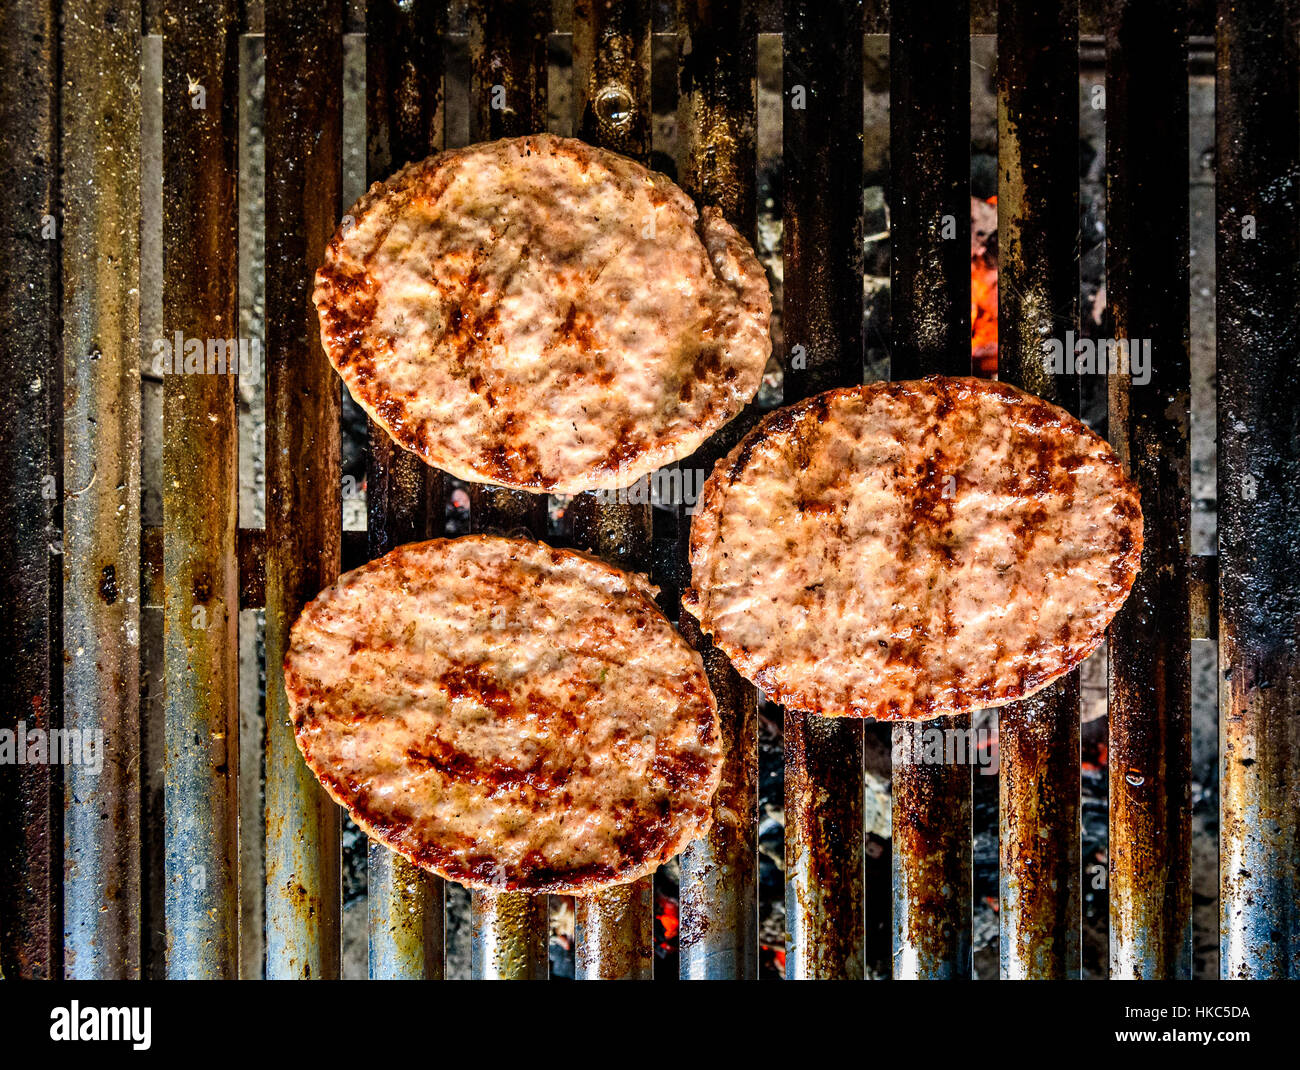 Burger auf den Grill BBQ grill auf heiße Holzkohle Grillen. Hausgemachte  Burger Bratlinge sind auf Öko-Grill-Bars für gesunde Ernährung und Kochen  gebraten wird Stockfotografie - Alamy